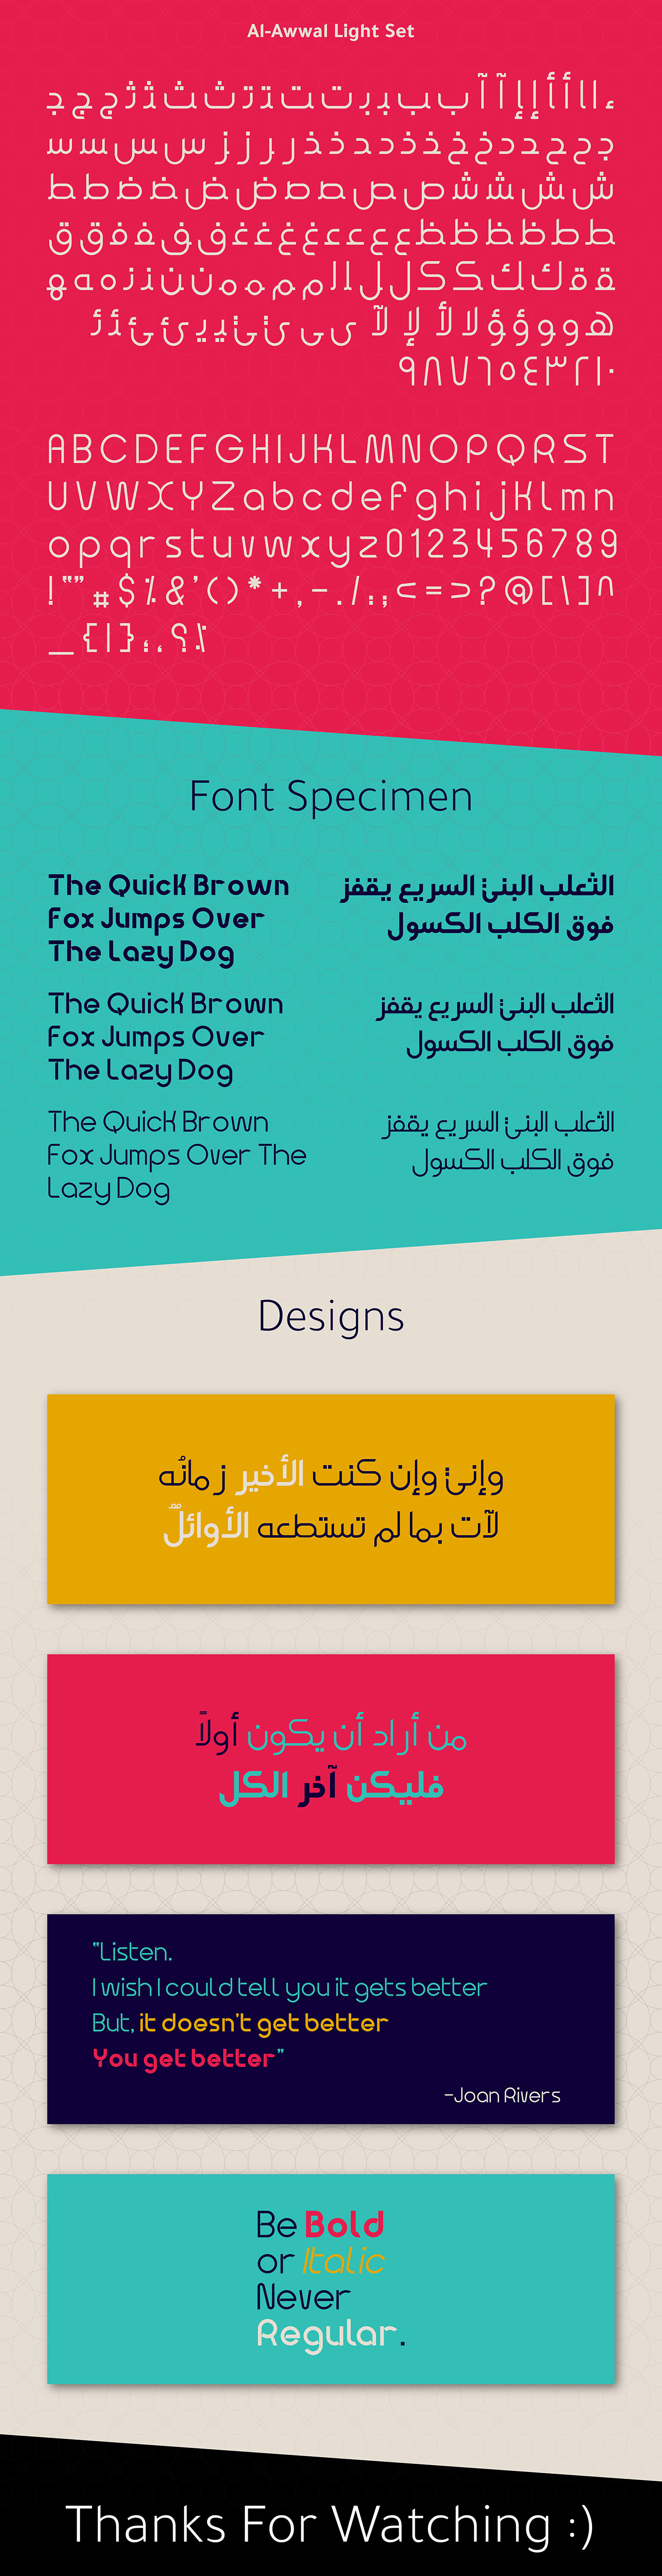 خط عربي لاتيني font type arabic font font family Typeface typography   download